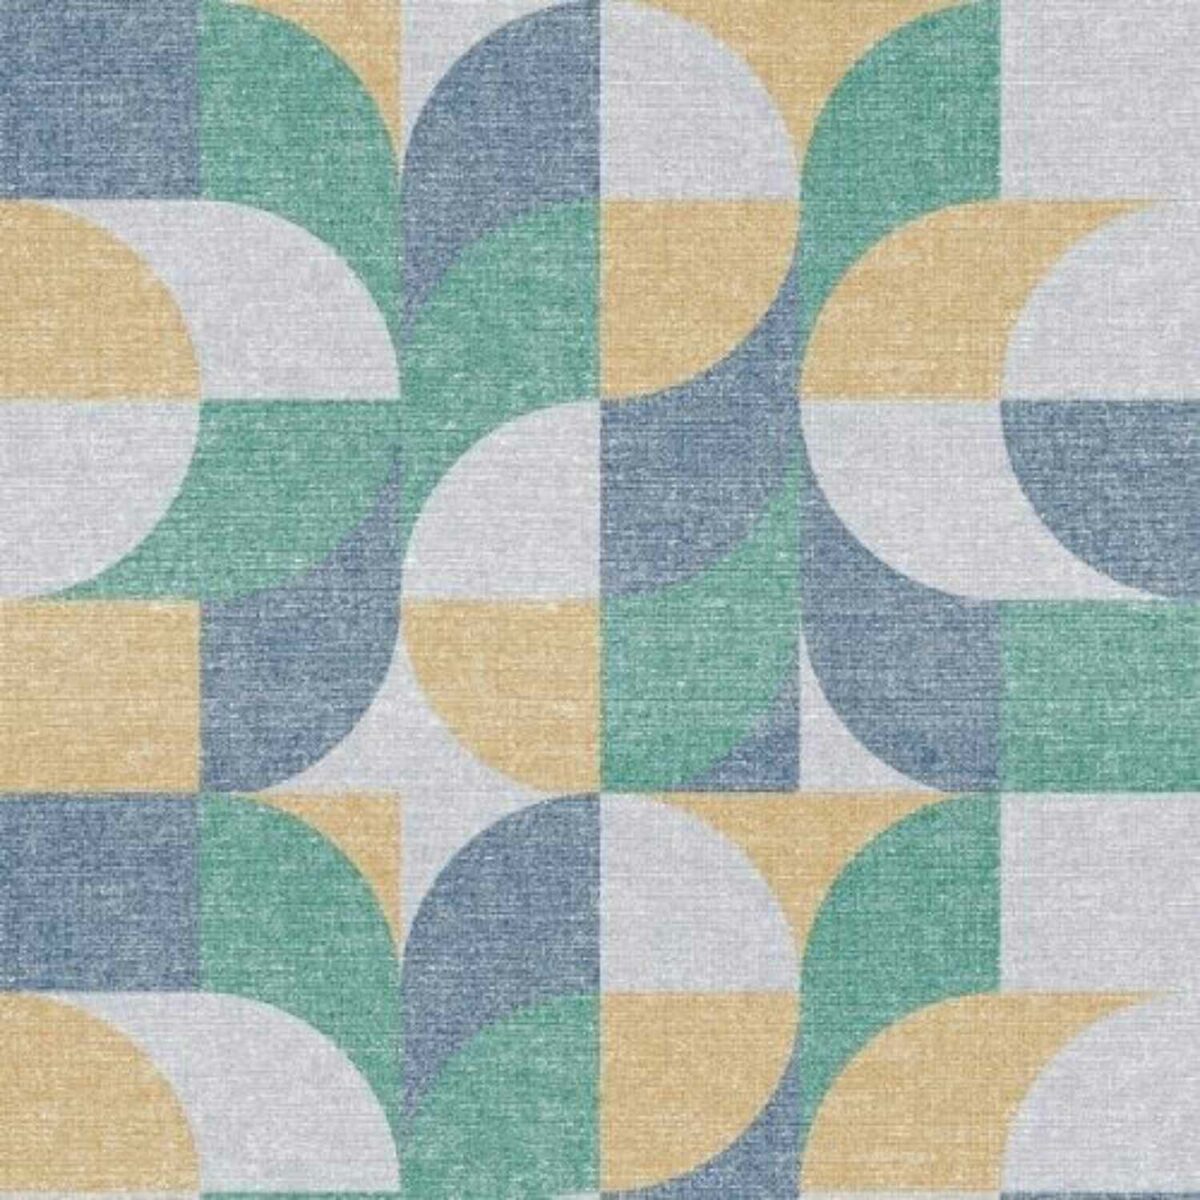 copripiumino-geopop-verde-puro-cotone-quadrifoglio-geometrico-astratto-moderno-giallo-grigio-blu-pattern